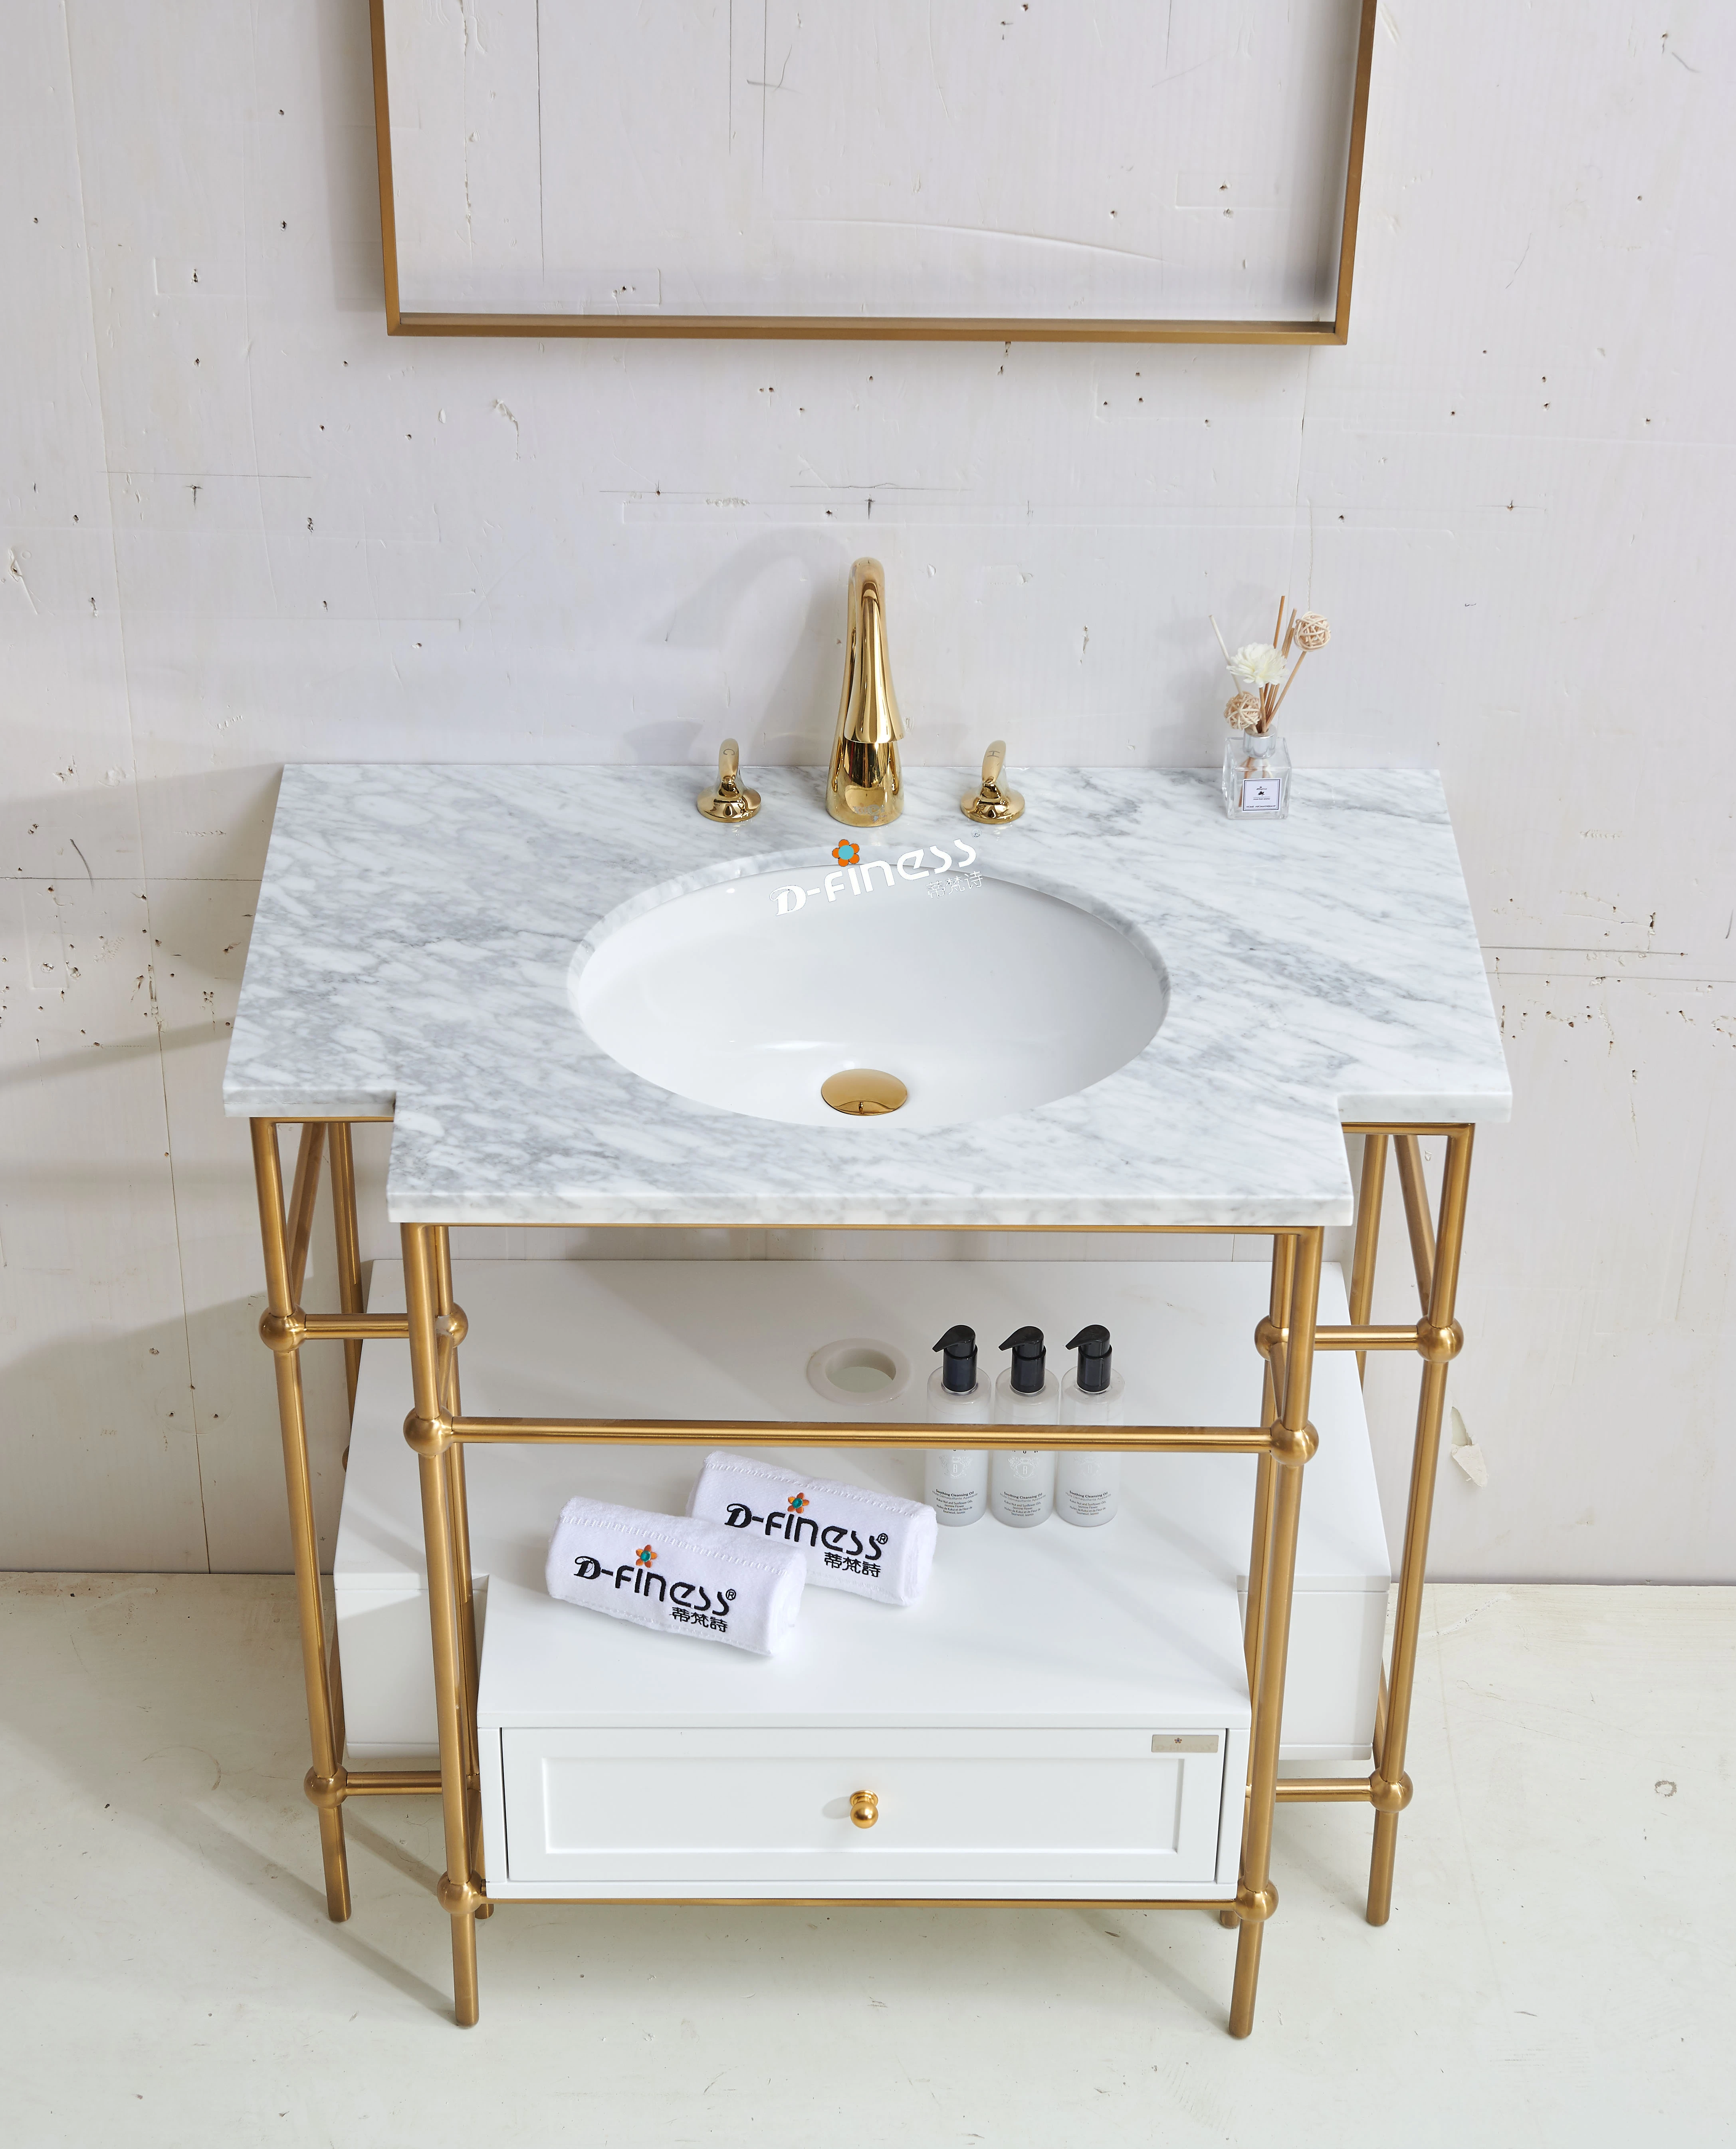 39" luxury style bathroom vanity unit mirror customized golden ss metal marble counter top sinks vanities